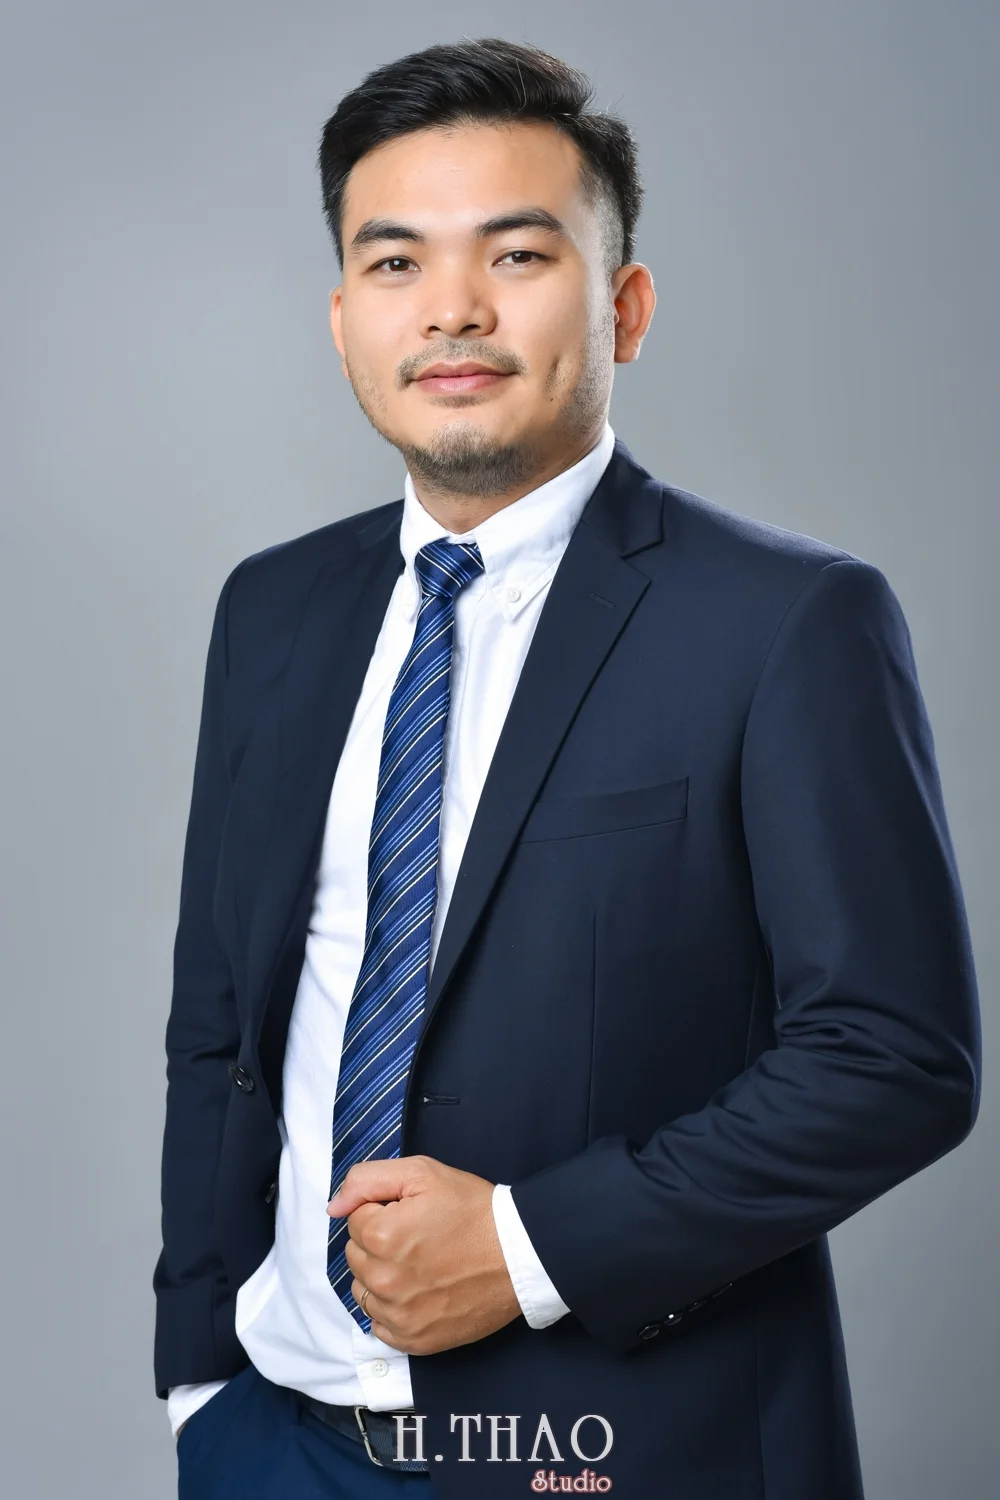 Anh profile cong ty 5 - Báo giá chụp hình Công ty -Doanh nghiệp ở Tp.HCM